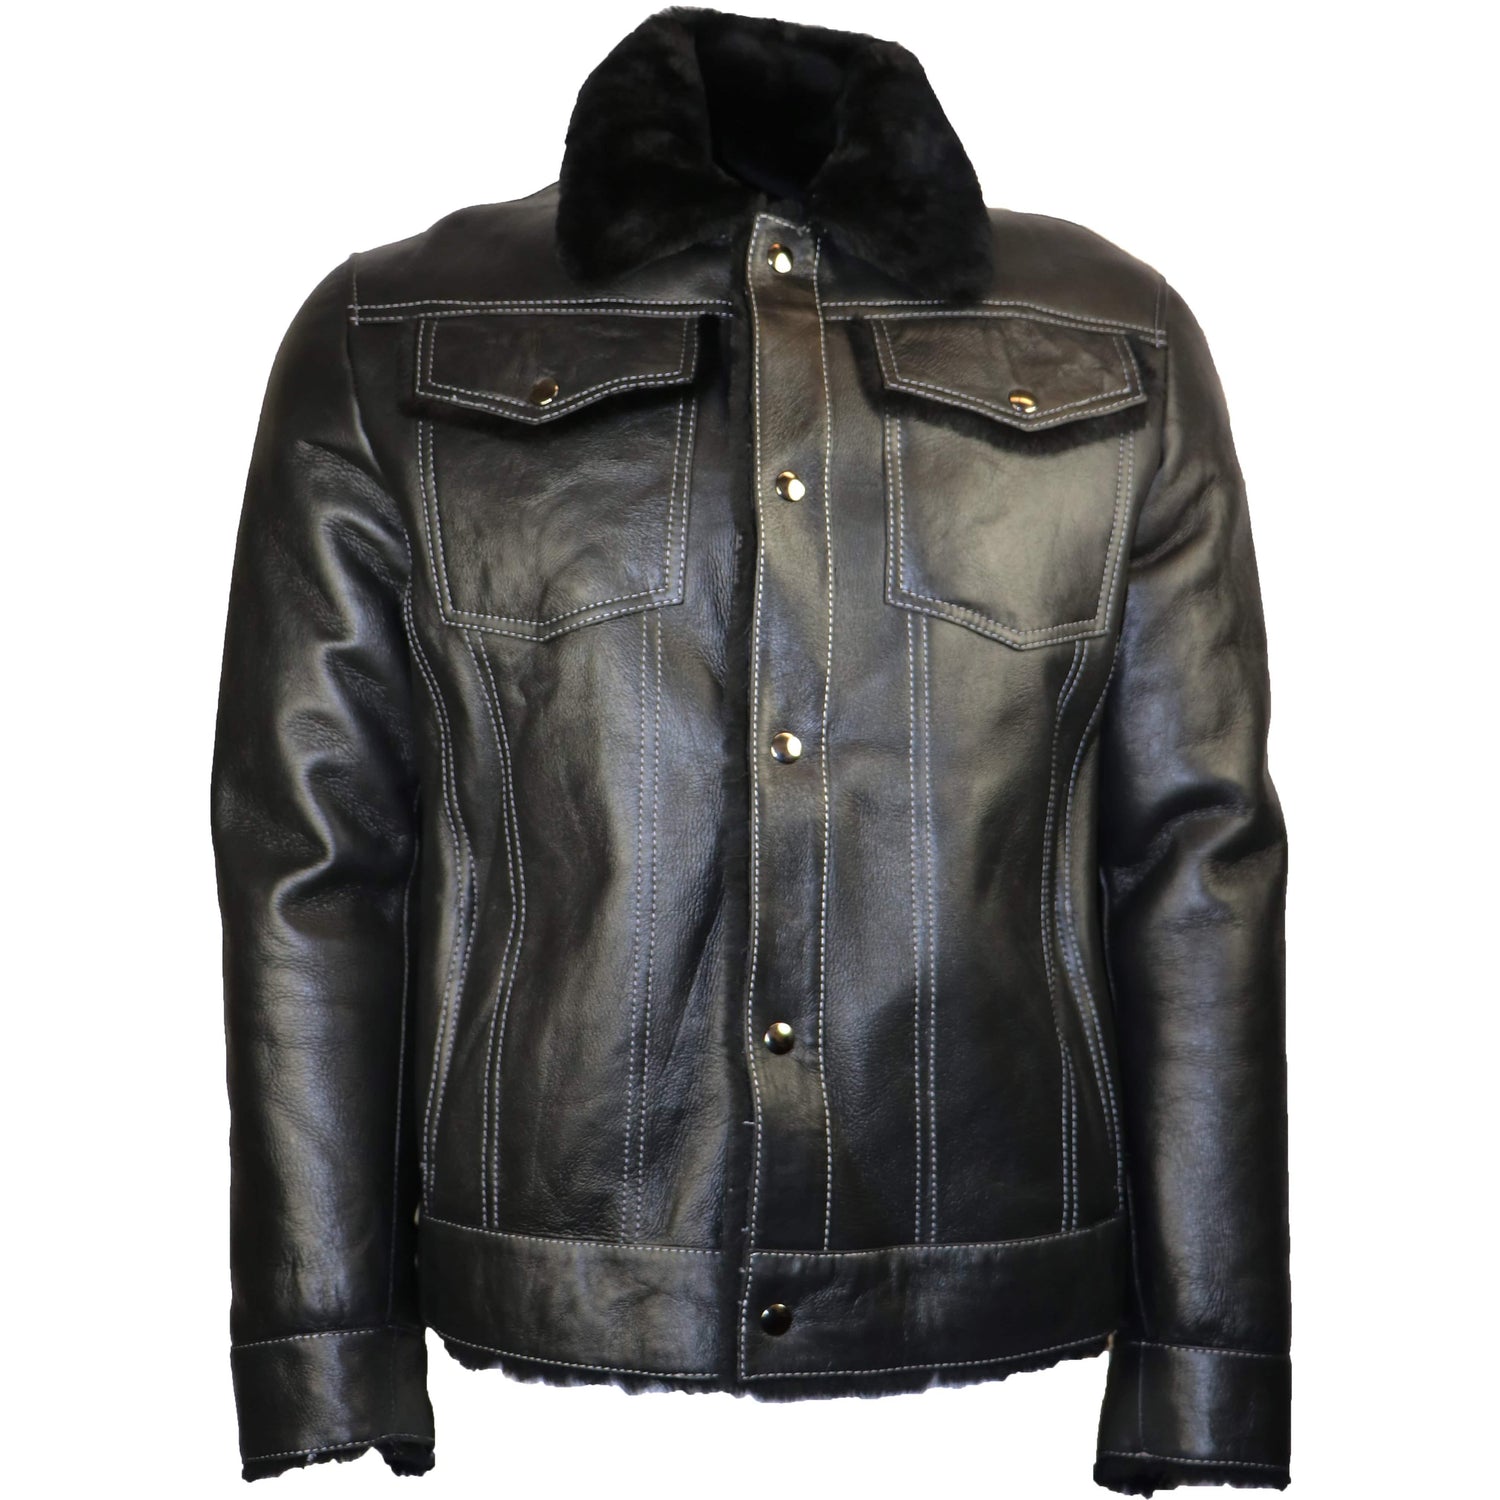 Zooloo Men's Sheepskin Shearling Jean Style Jacket - Zooloo Leather